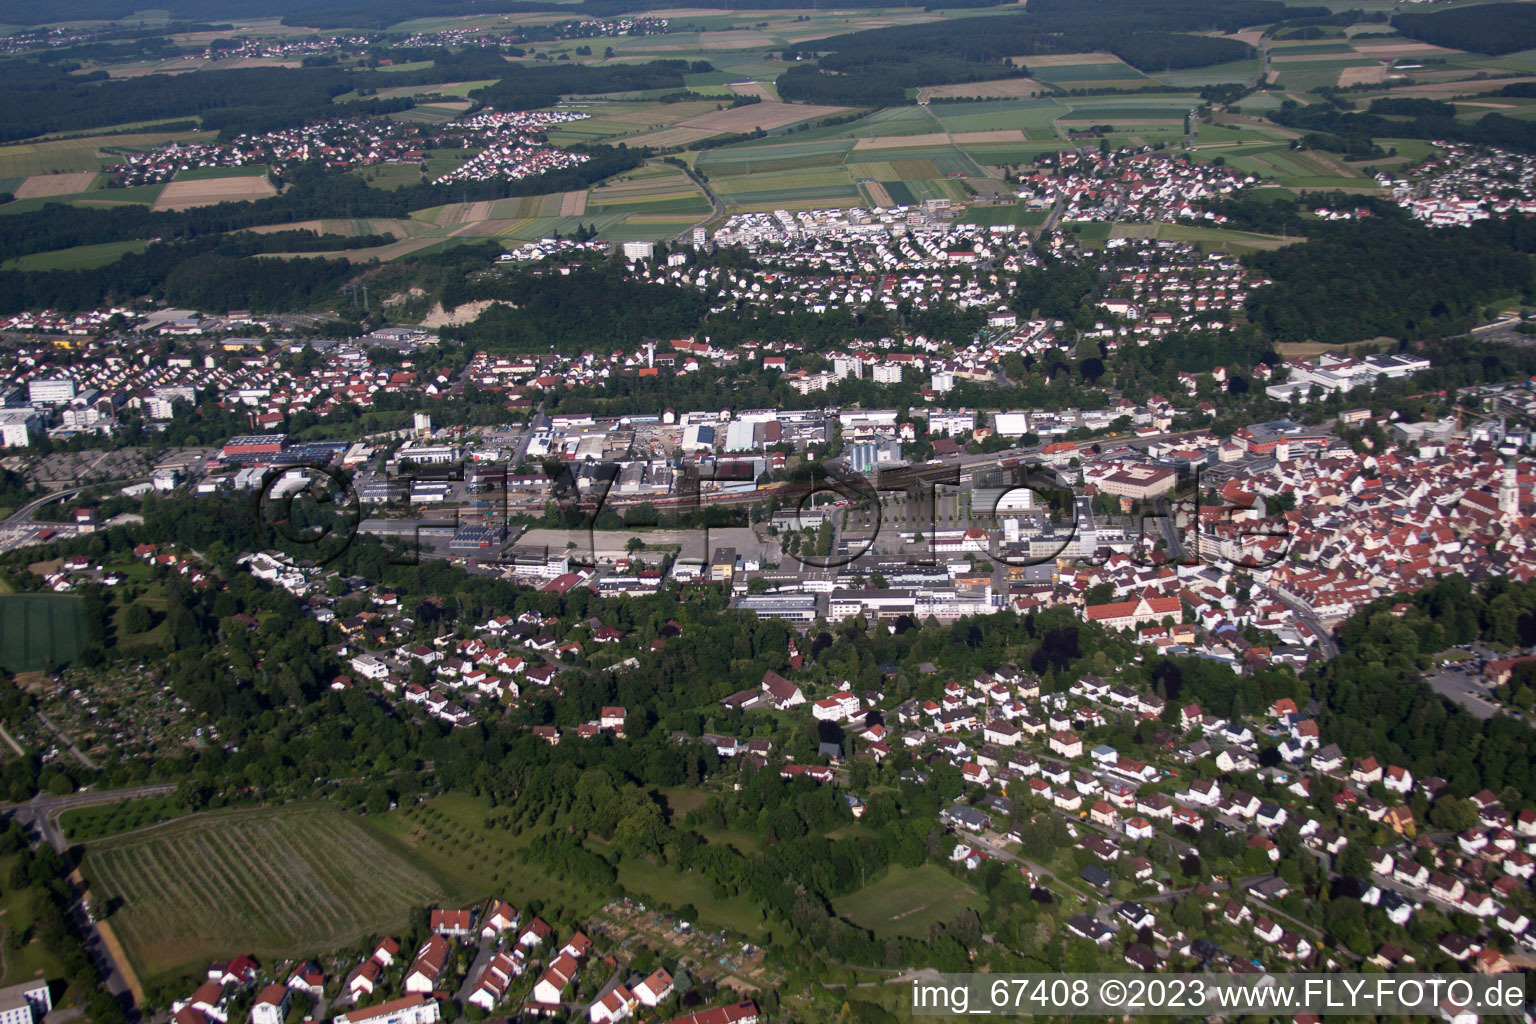 Luftbild von Biberach an der Riß im Bundesland Baden-Württemberg, Deutschland